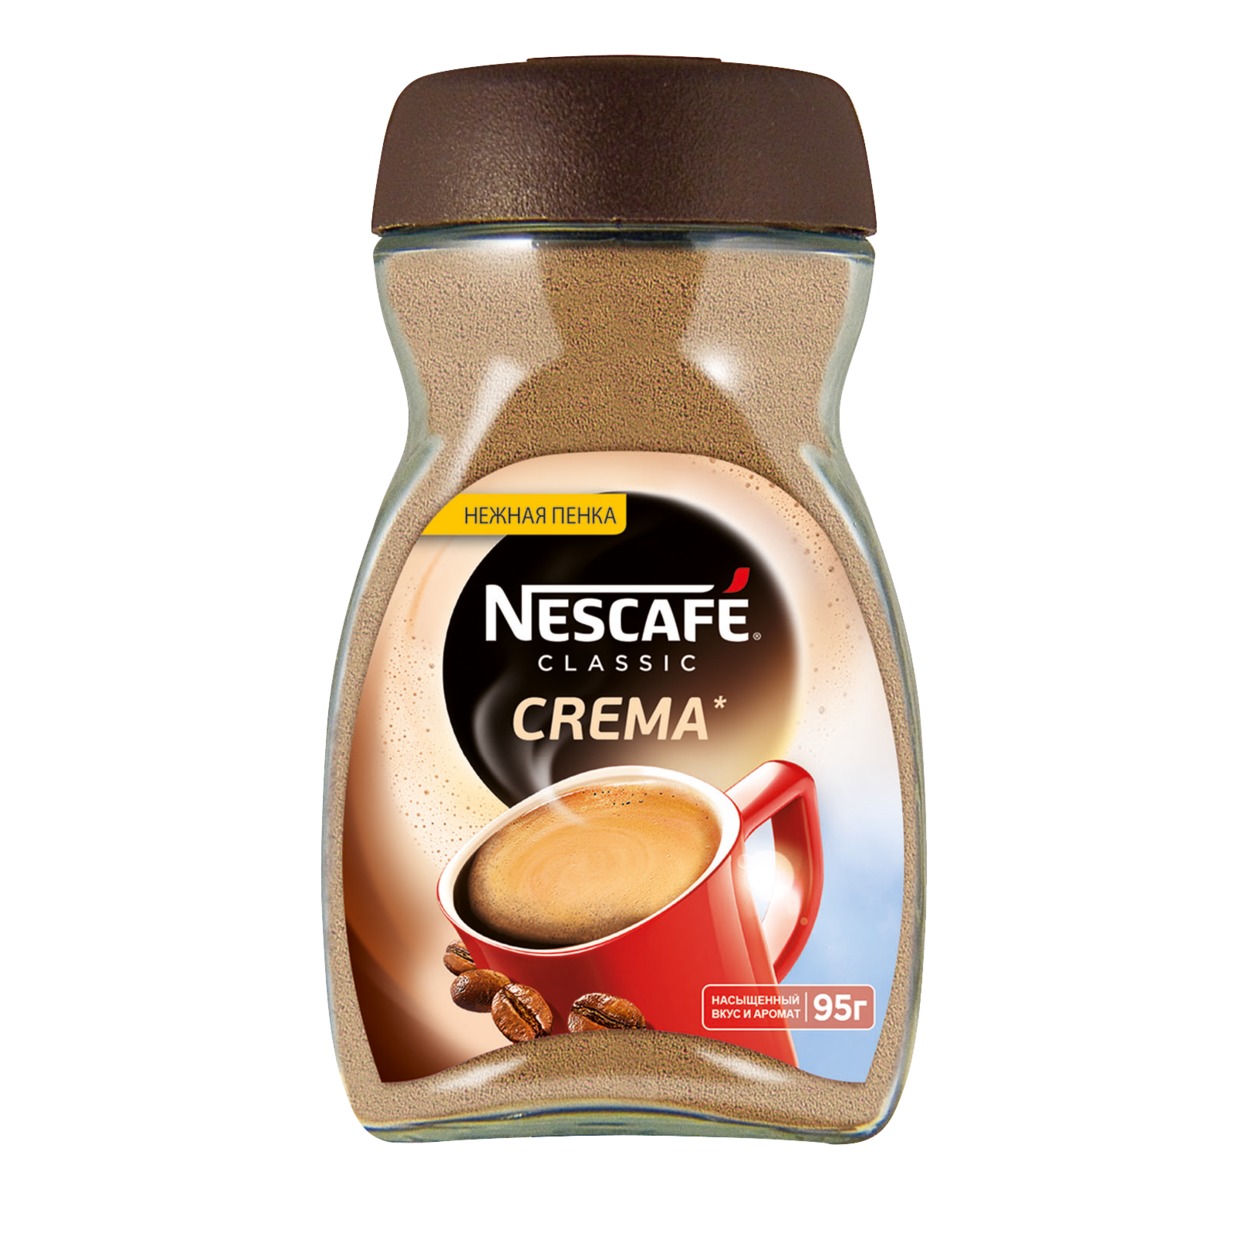 Кофе Nescafe Crema, растворимый, 95 г по акции в Пятерочке